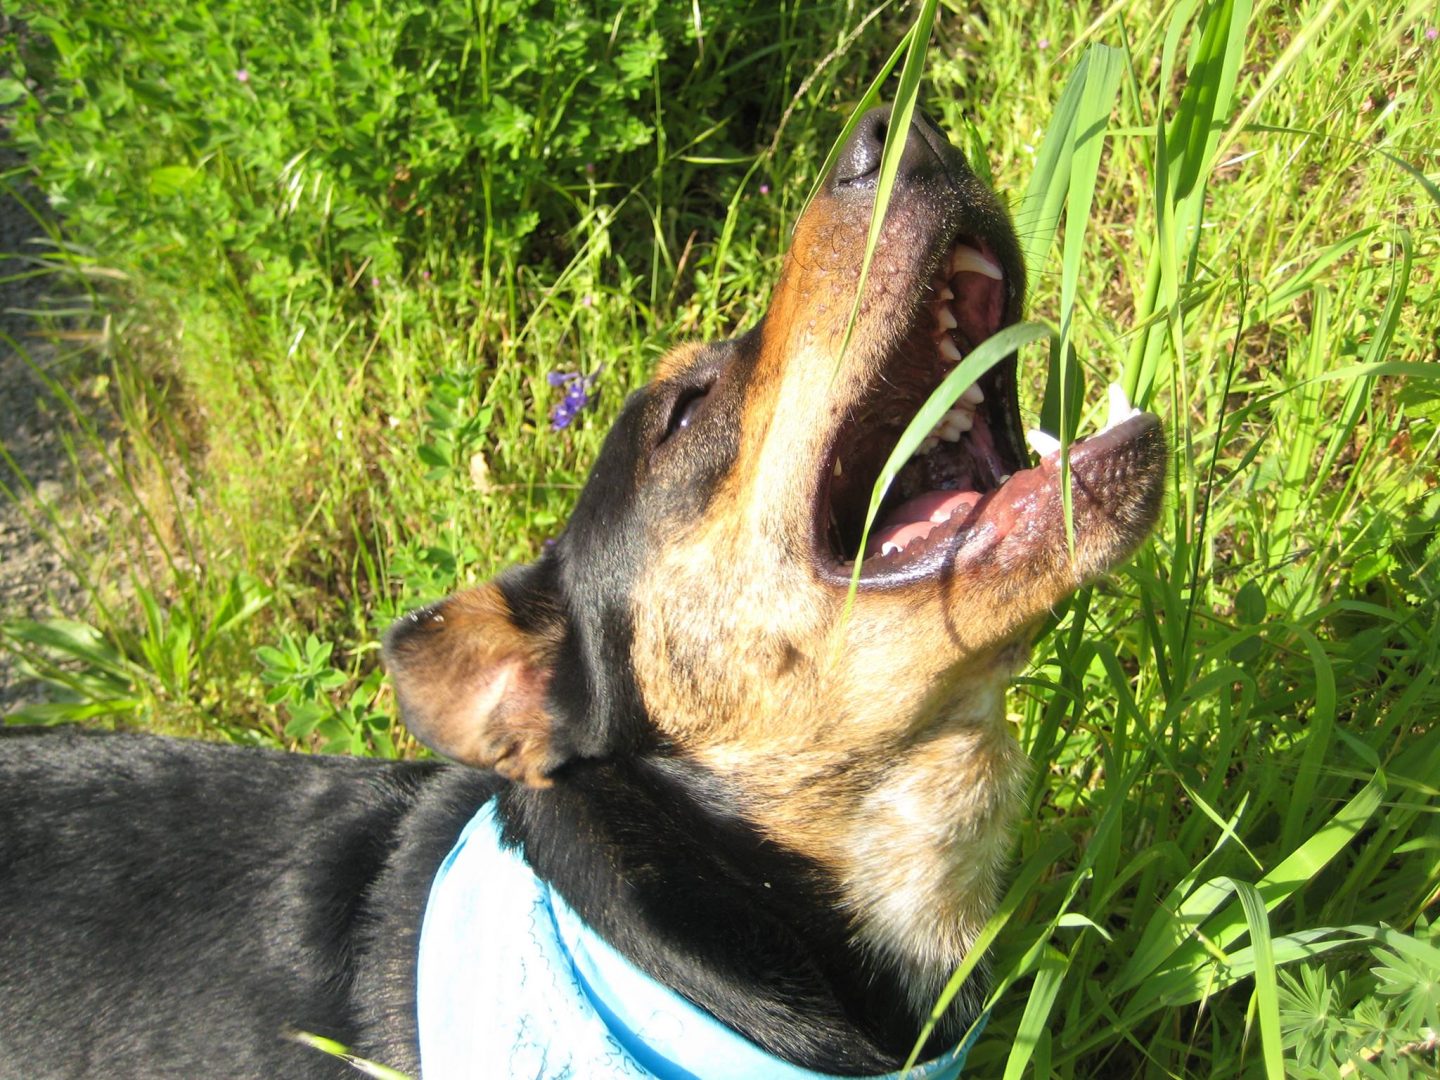 Saca la aseguranza Sinceramente Asser Por qué los perros comen hierba? - DogBuddy Blog